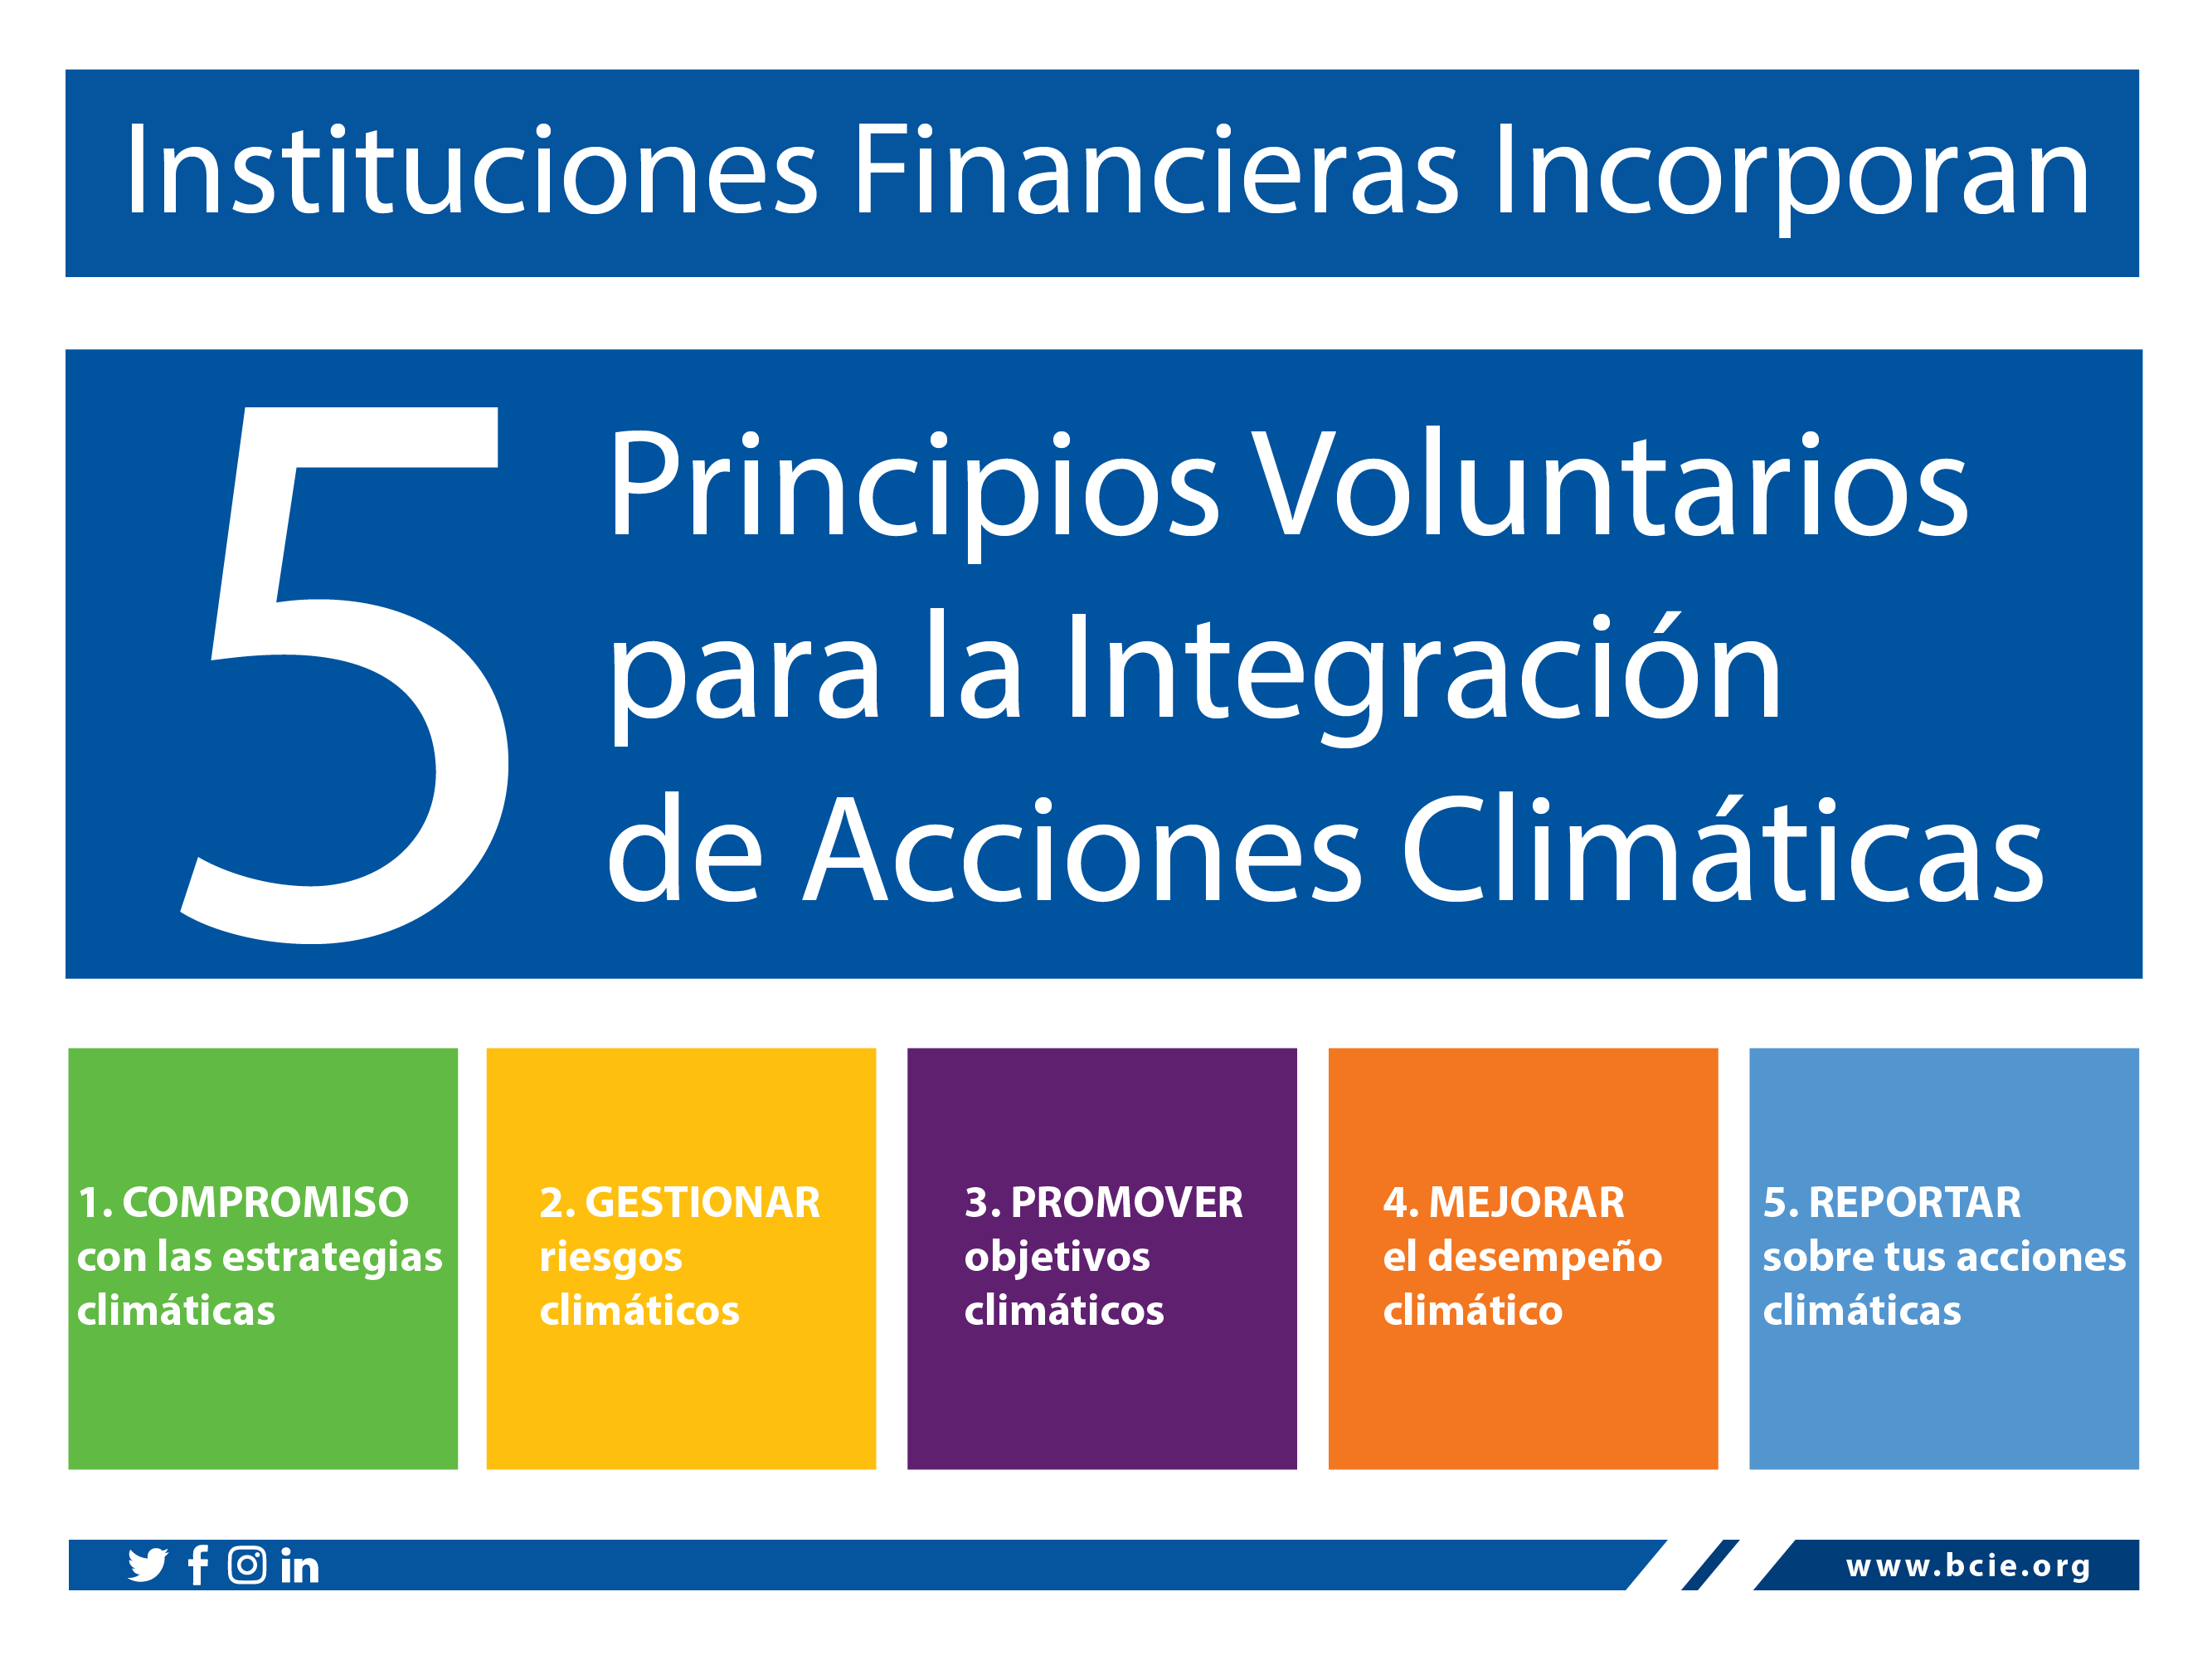 Los principios establecen un camino claro para que las instituciones financieras integren el cambio climático en sus operaciones.